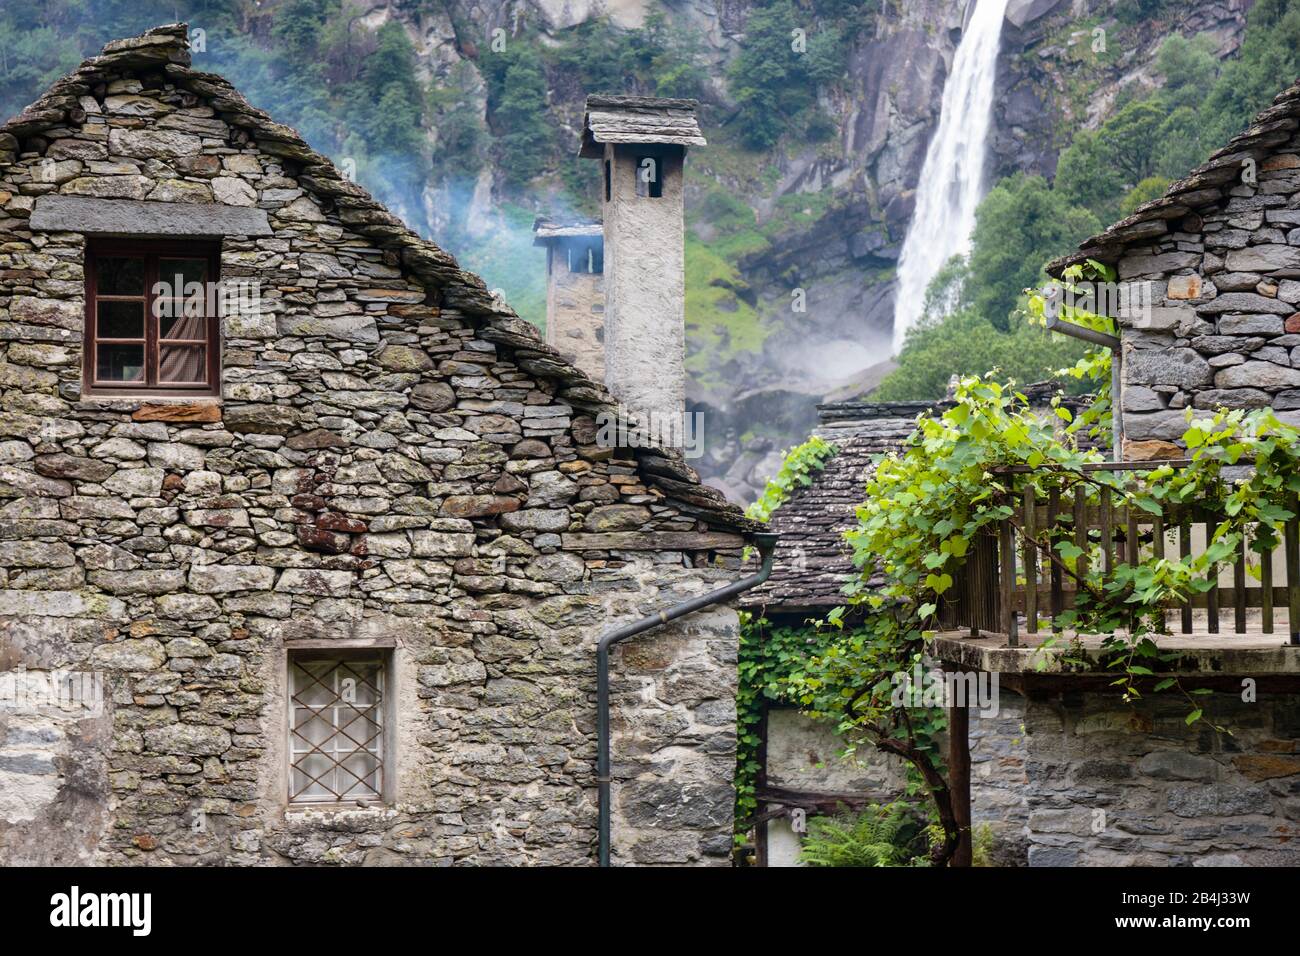 Europa, Schweiz, Tessin, Foroglio. Blick durch das malerische, alte Dorf Foroglio auf den Calnègia-Wasserfall. Stock Photo